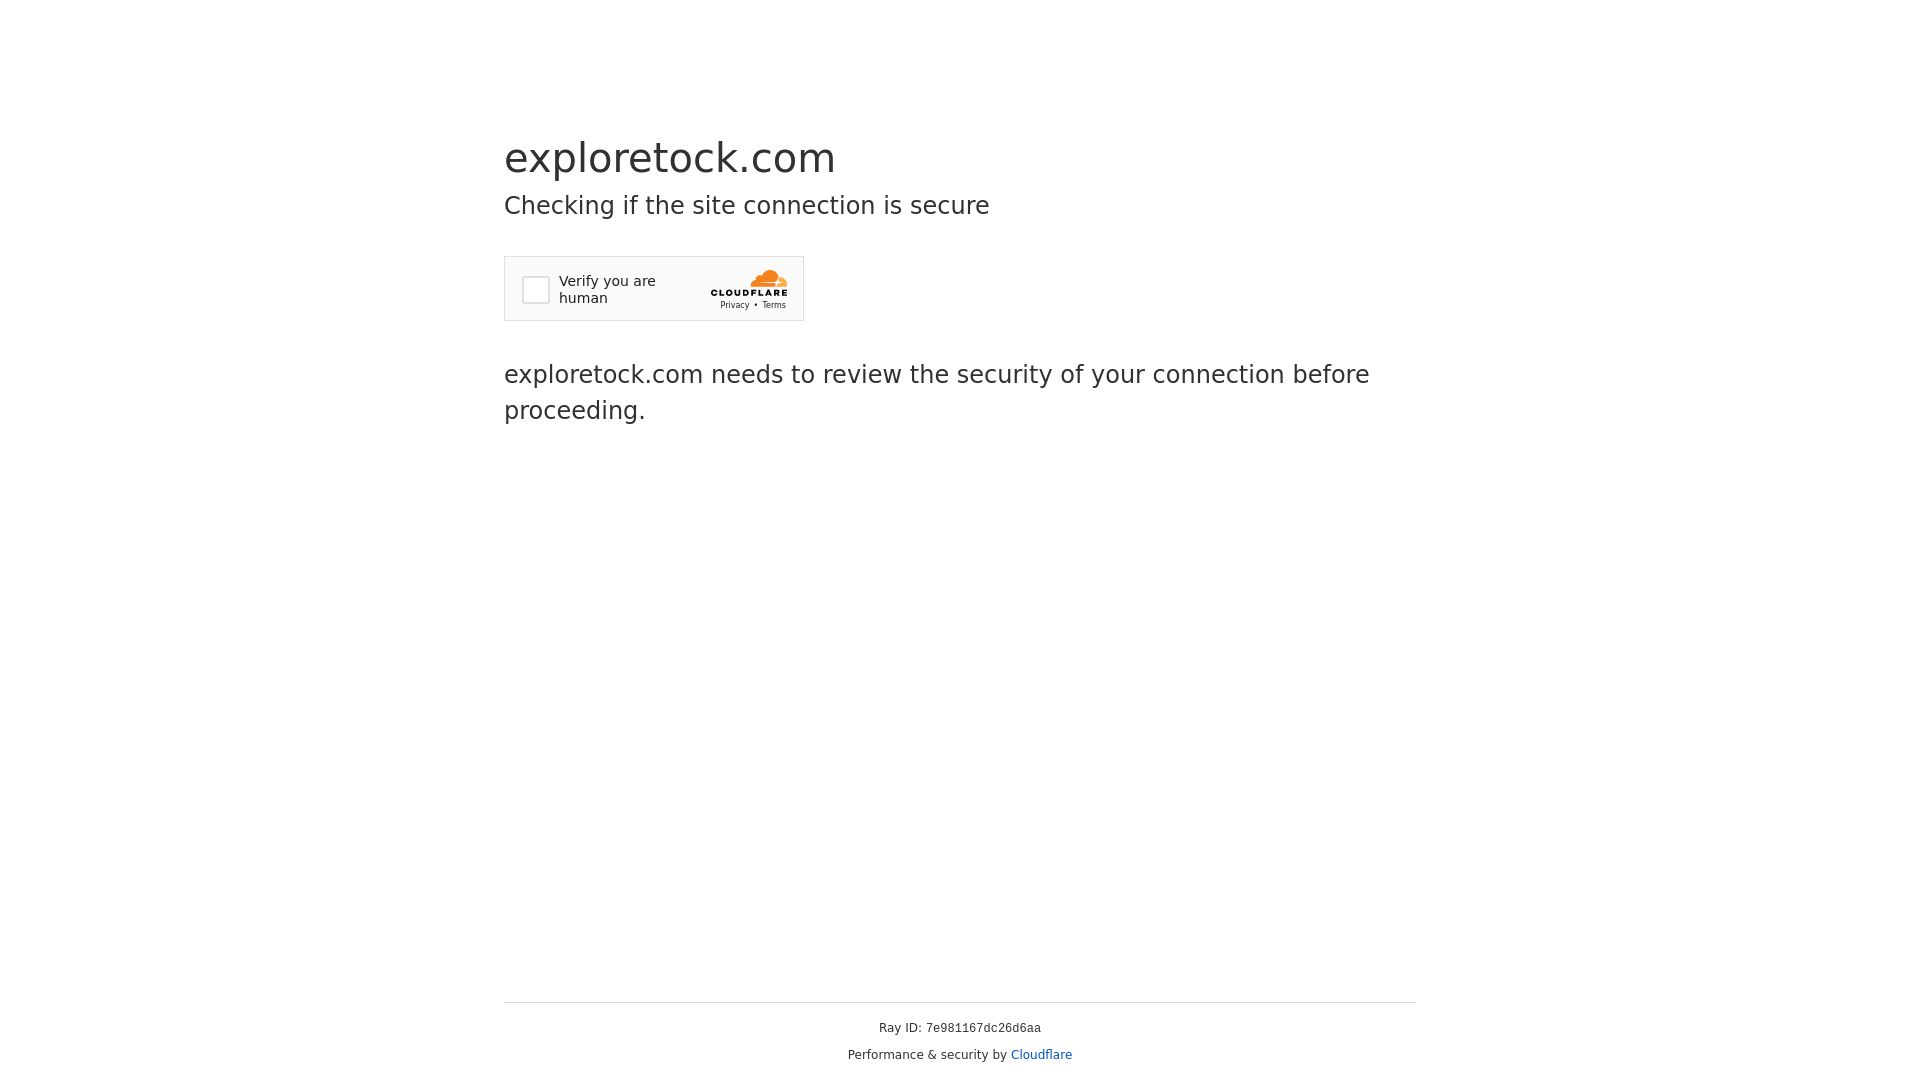 Website status exploretock.com is   ONLINE